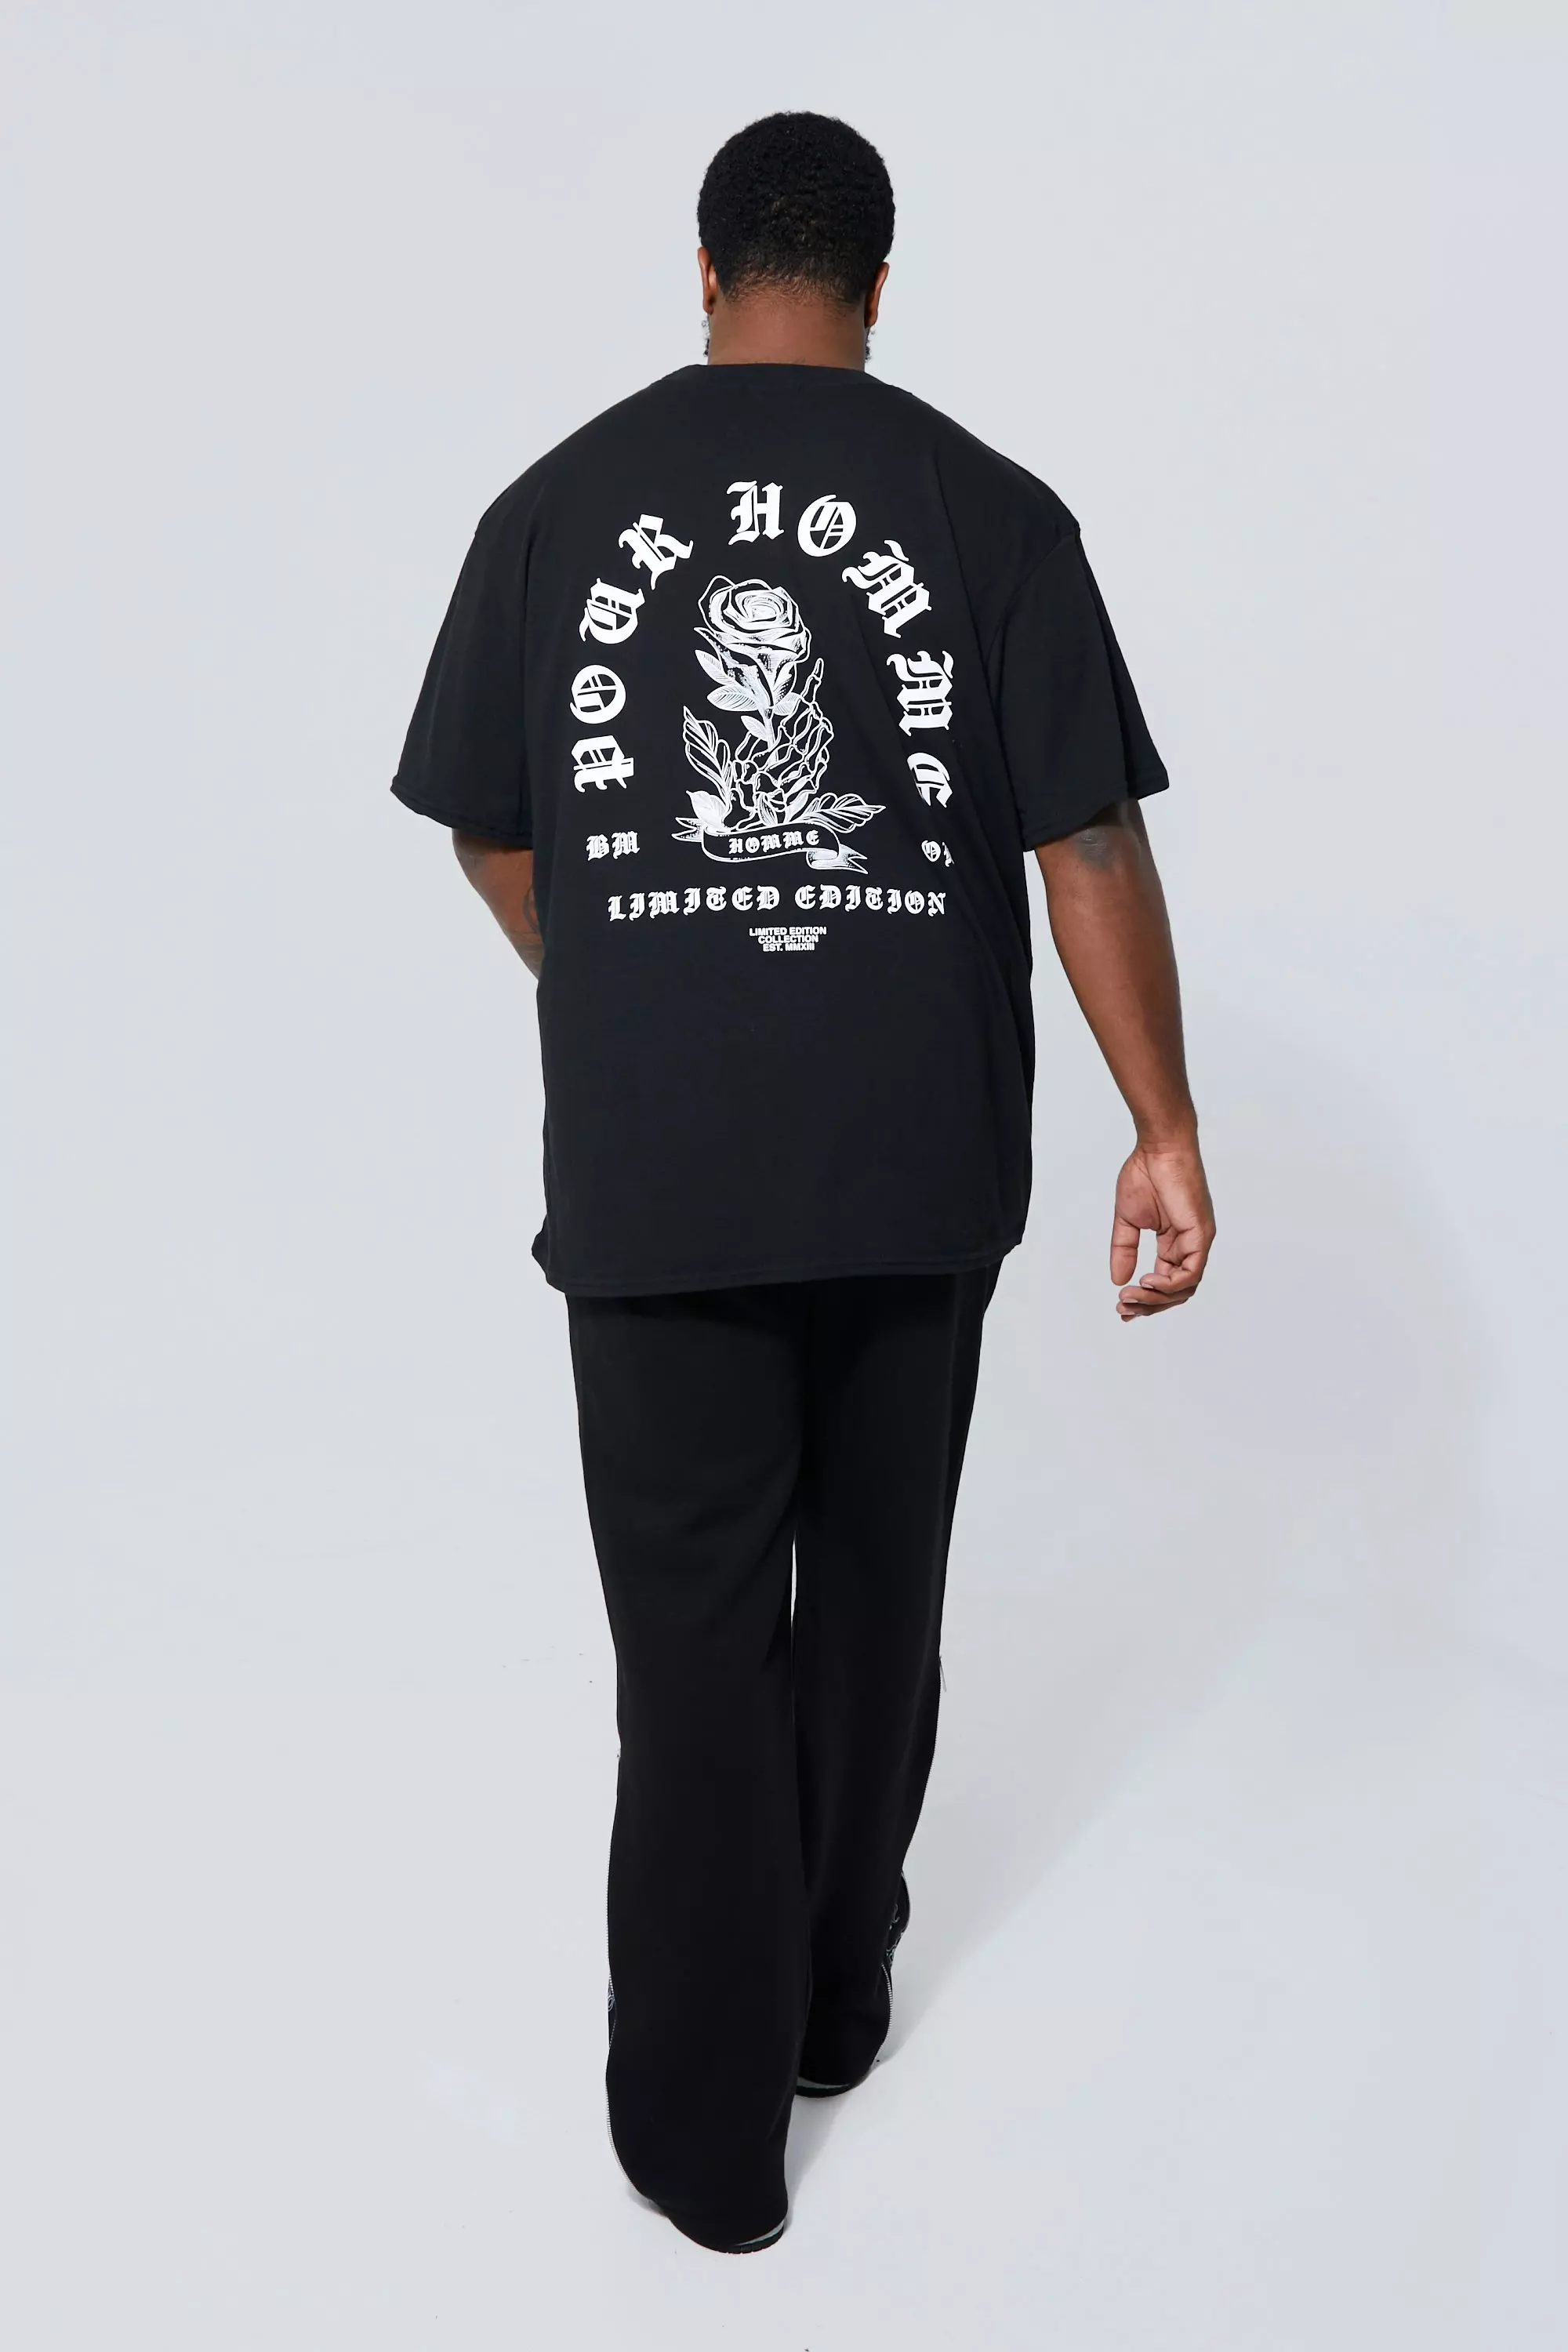 boohooMAN Plus Size Pour Homme Y2K Star Print T-Shirt